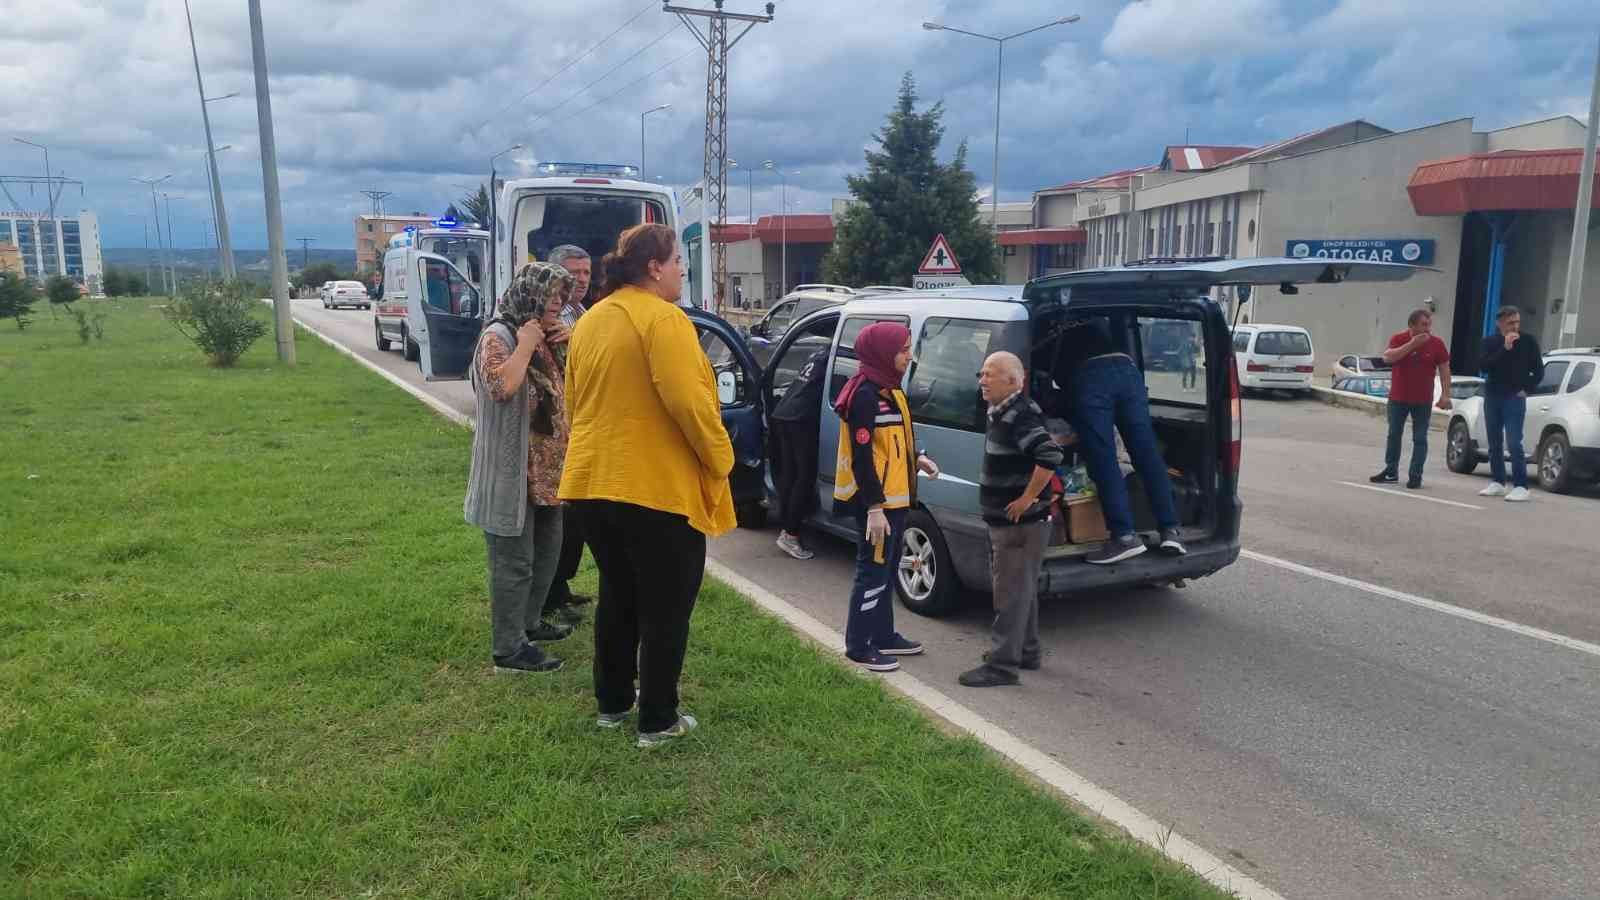 Sinop’ta trafik kazası: 4 yaralı